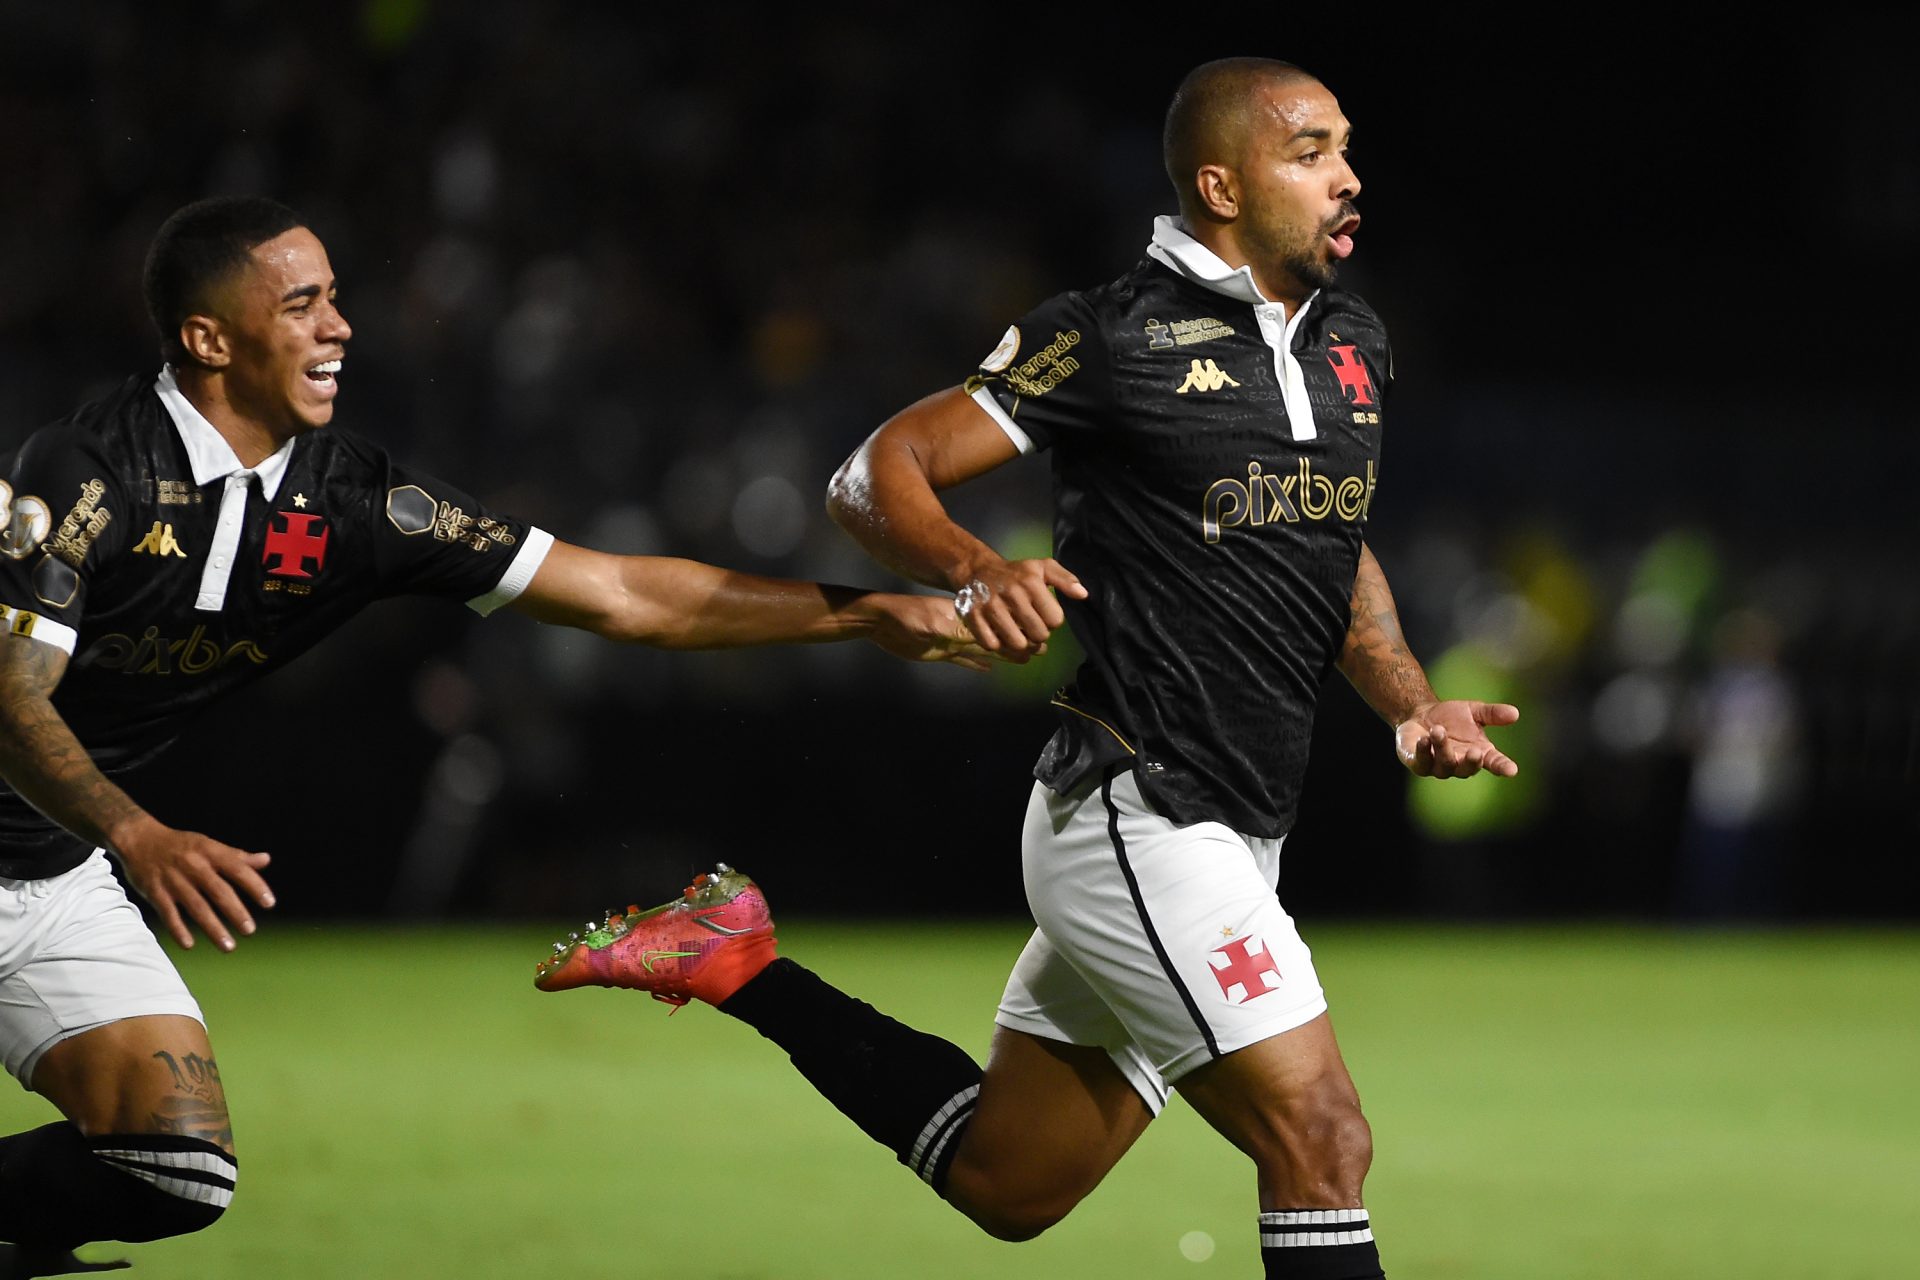 Paulo Henrique, do Vasco da Gama, comemora seu gol marcado diante do Botafogo - Foto: Alexandre Durão/Zimel Press/Estadão Conteúdo